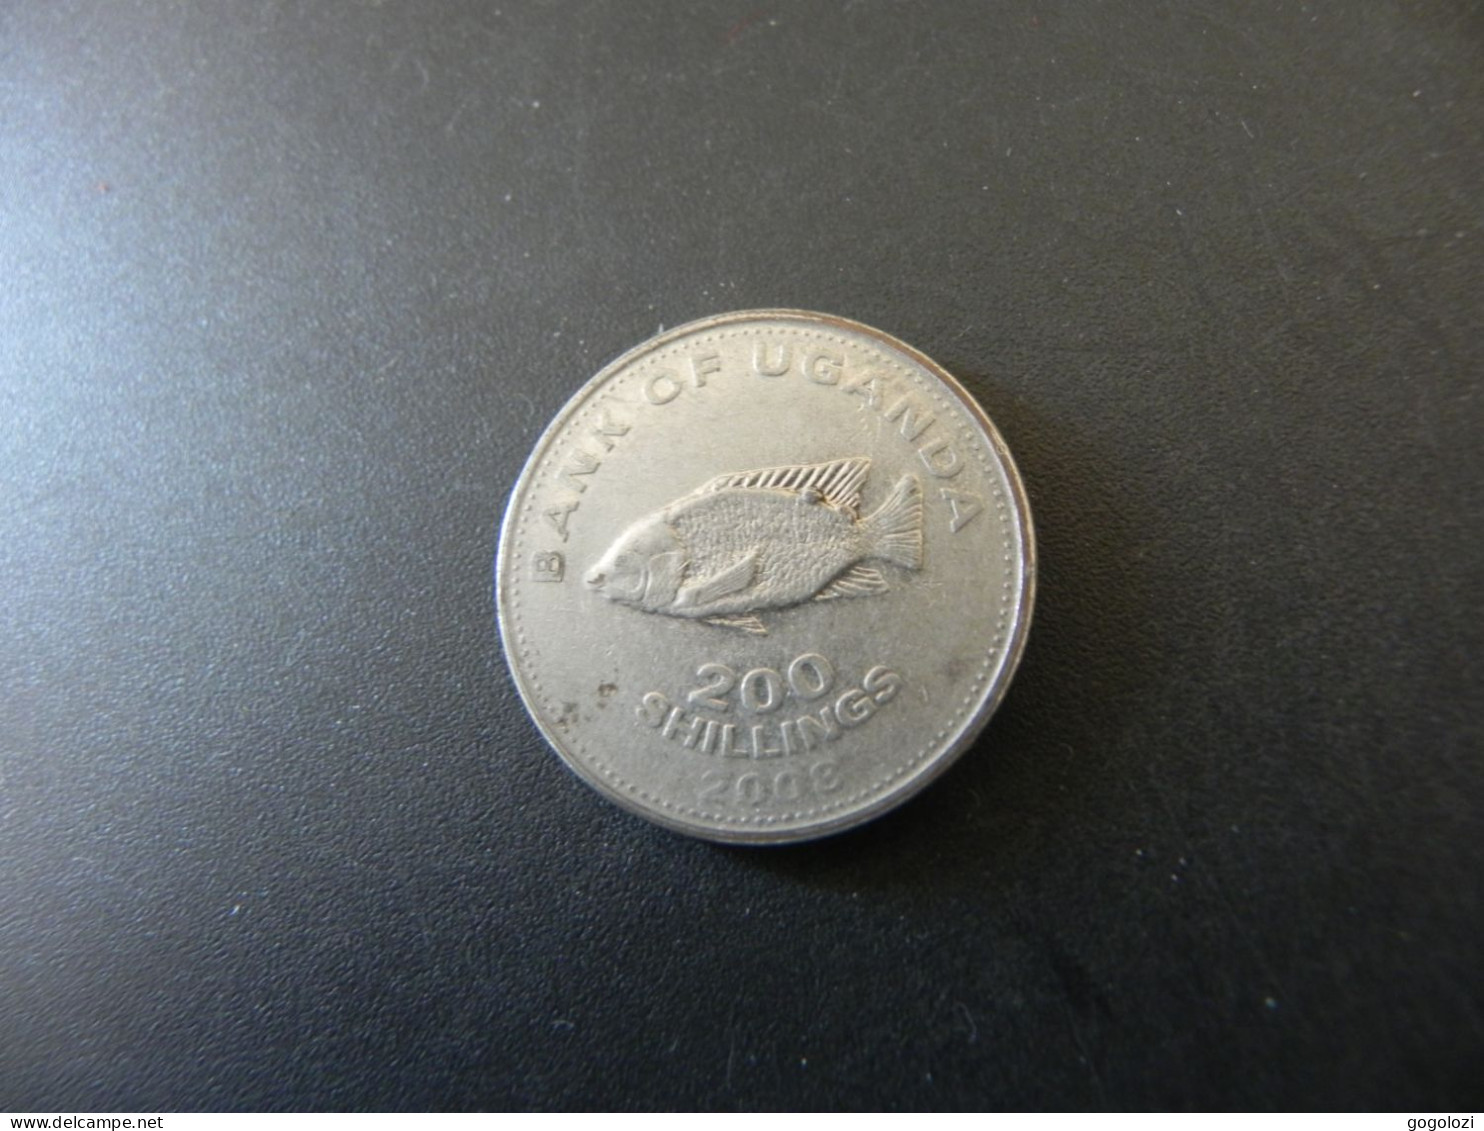 Uganda 200 Shillings 2008 - Uganda